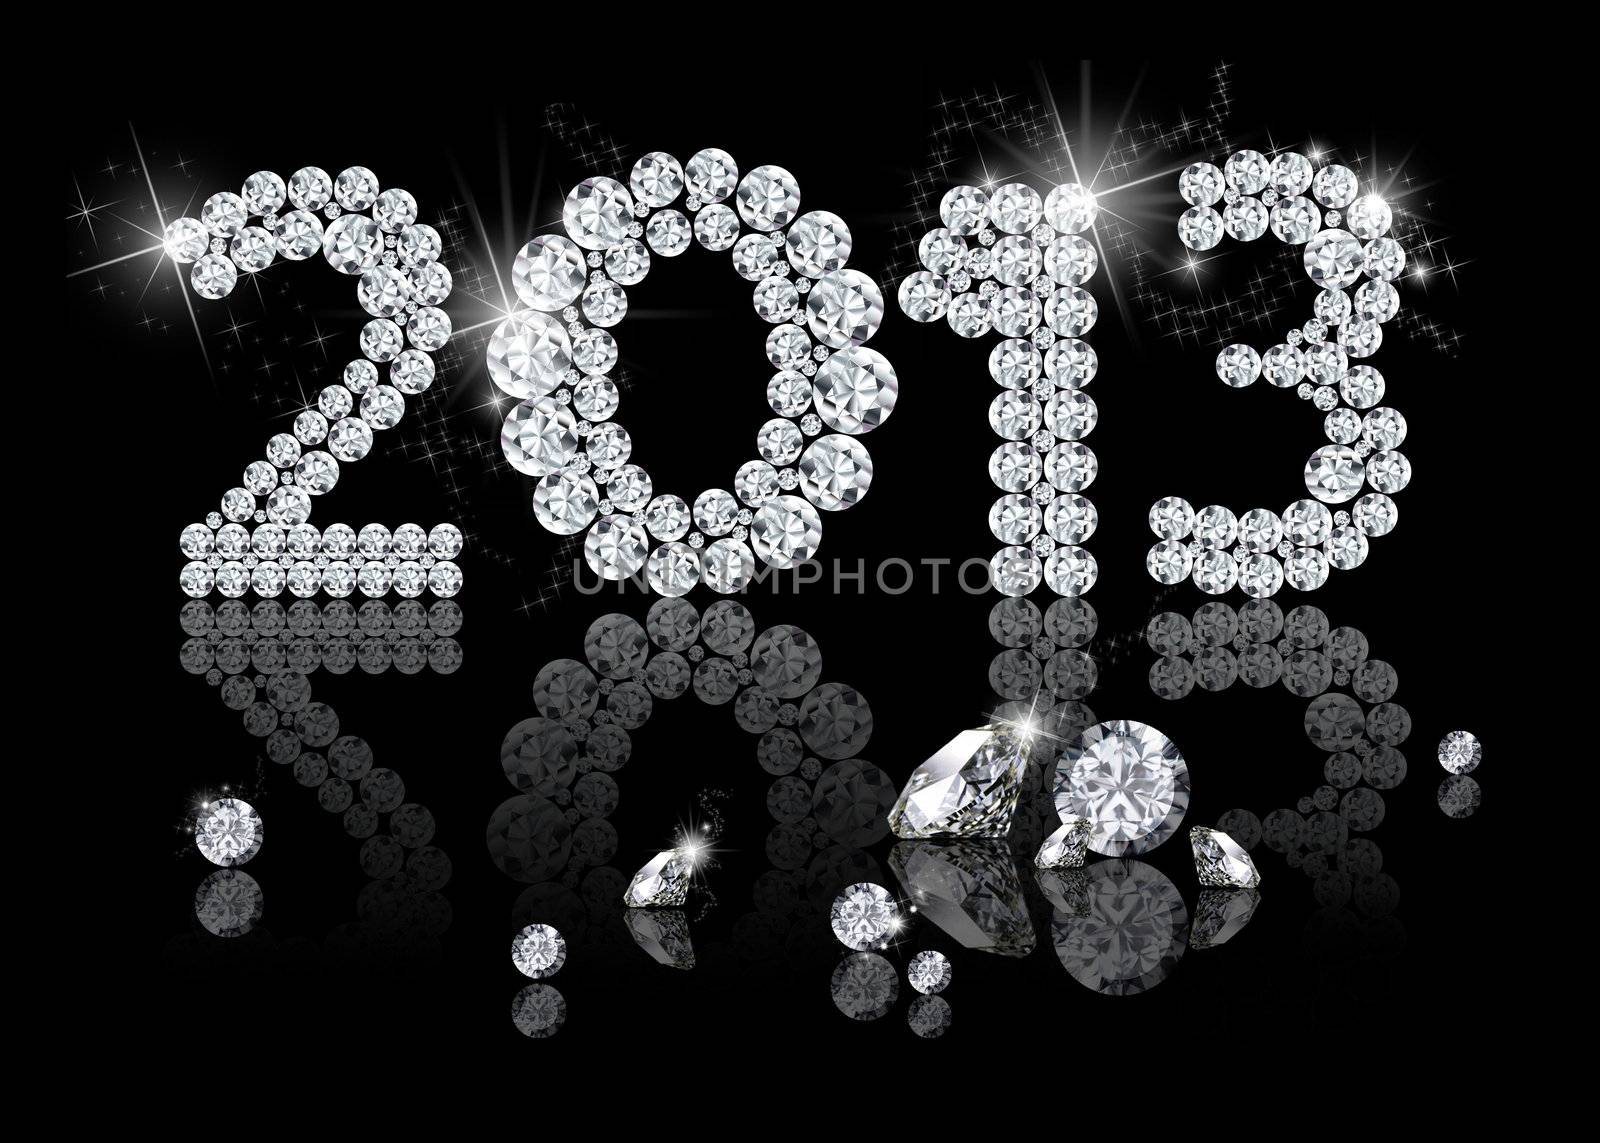 Brilliant New Year 2013 by SorayaShan